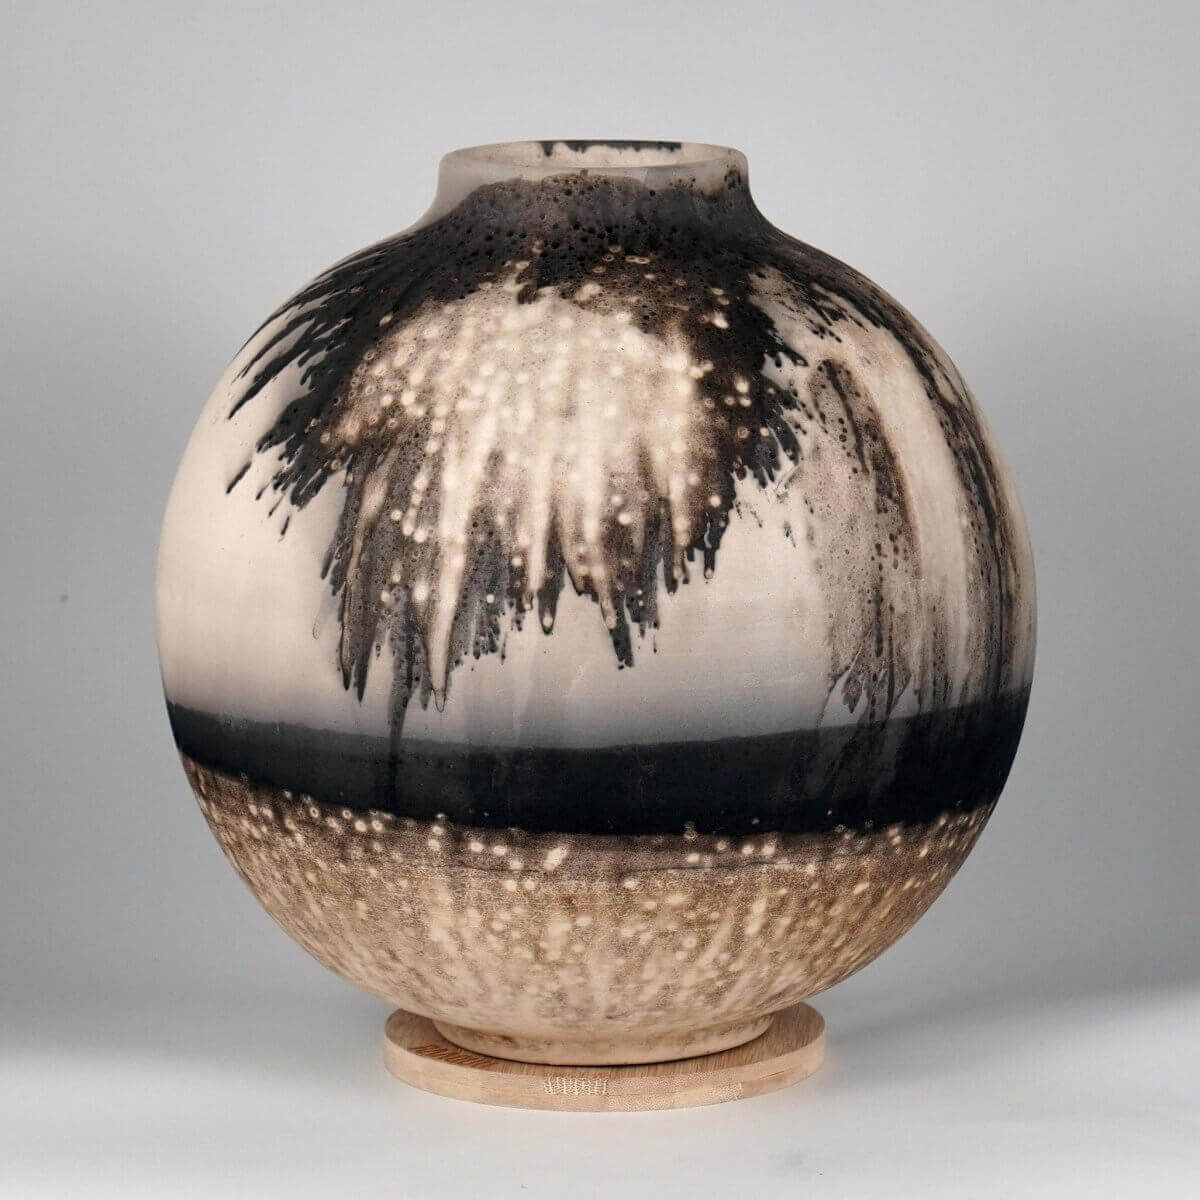 RAAQUU Large Globe Ceramic Vase Obvara S/N0000651 11" Raku Pottery - RAAQUU